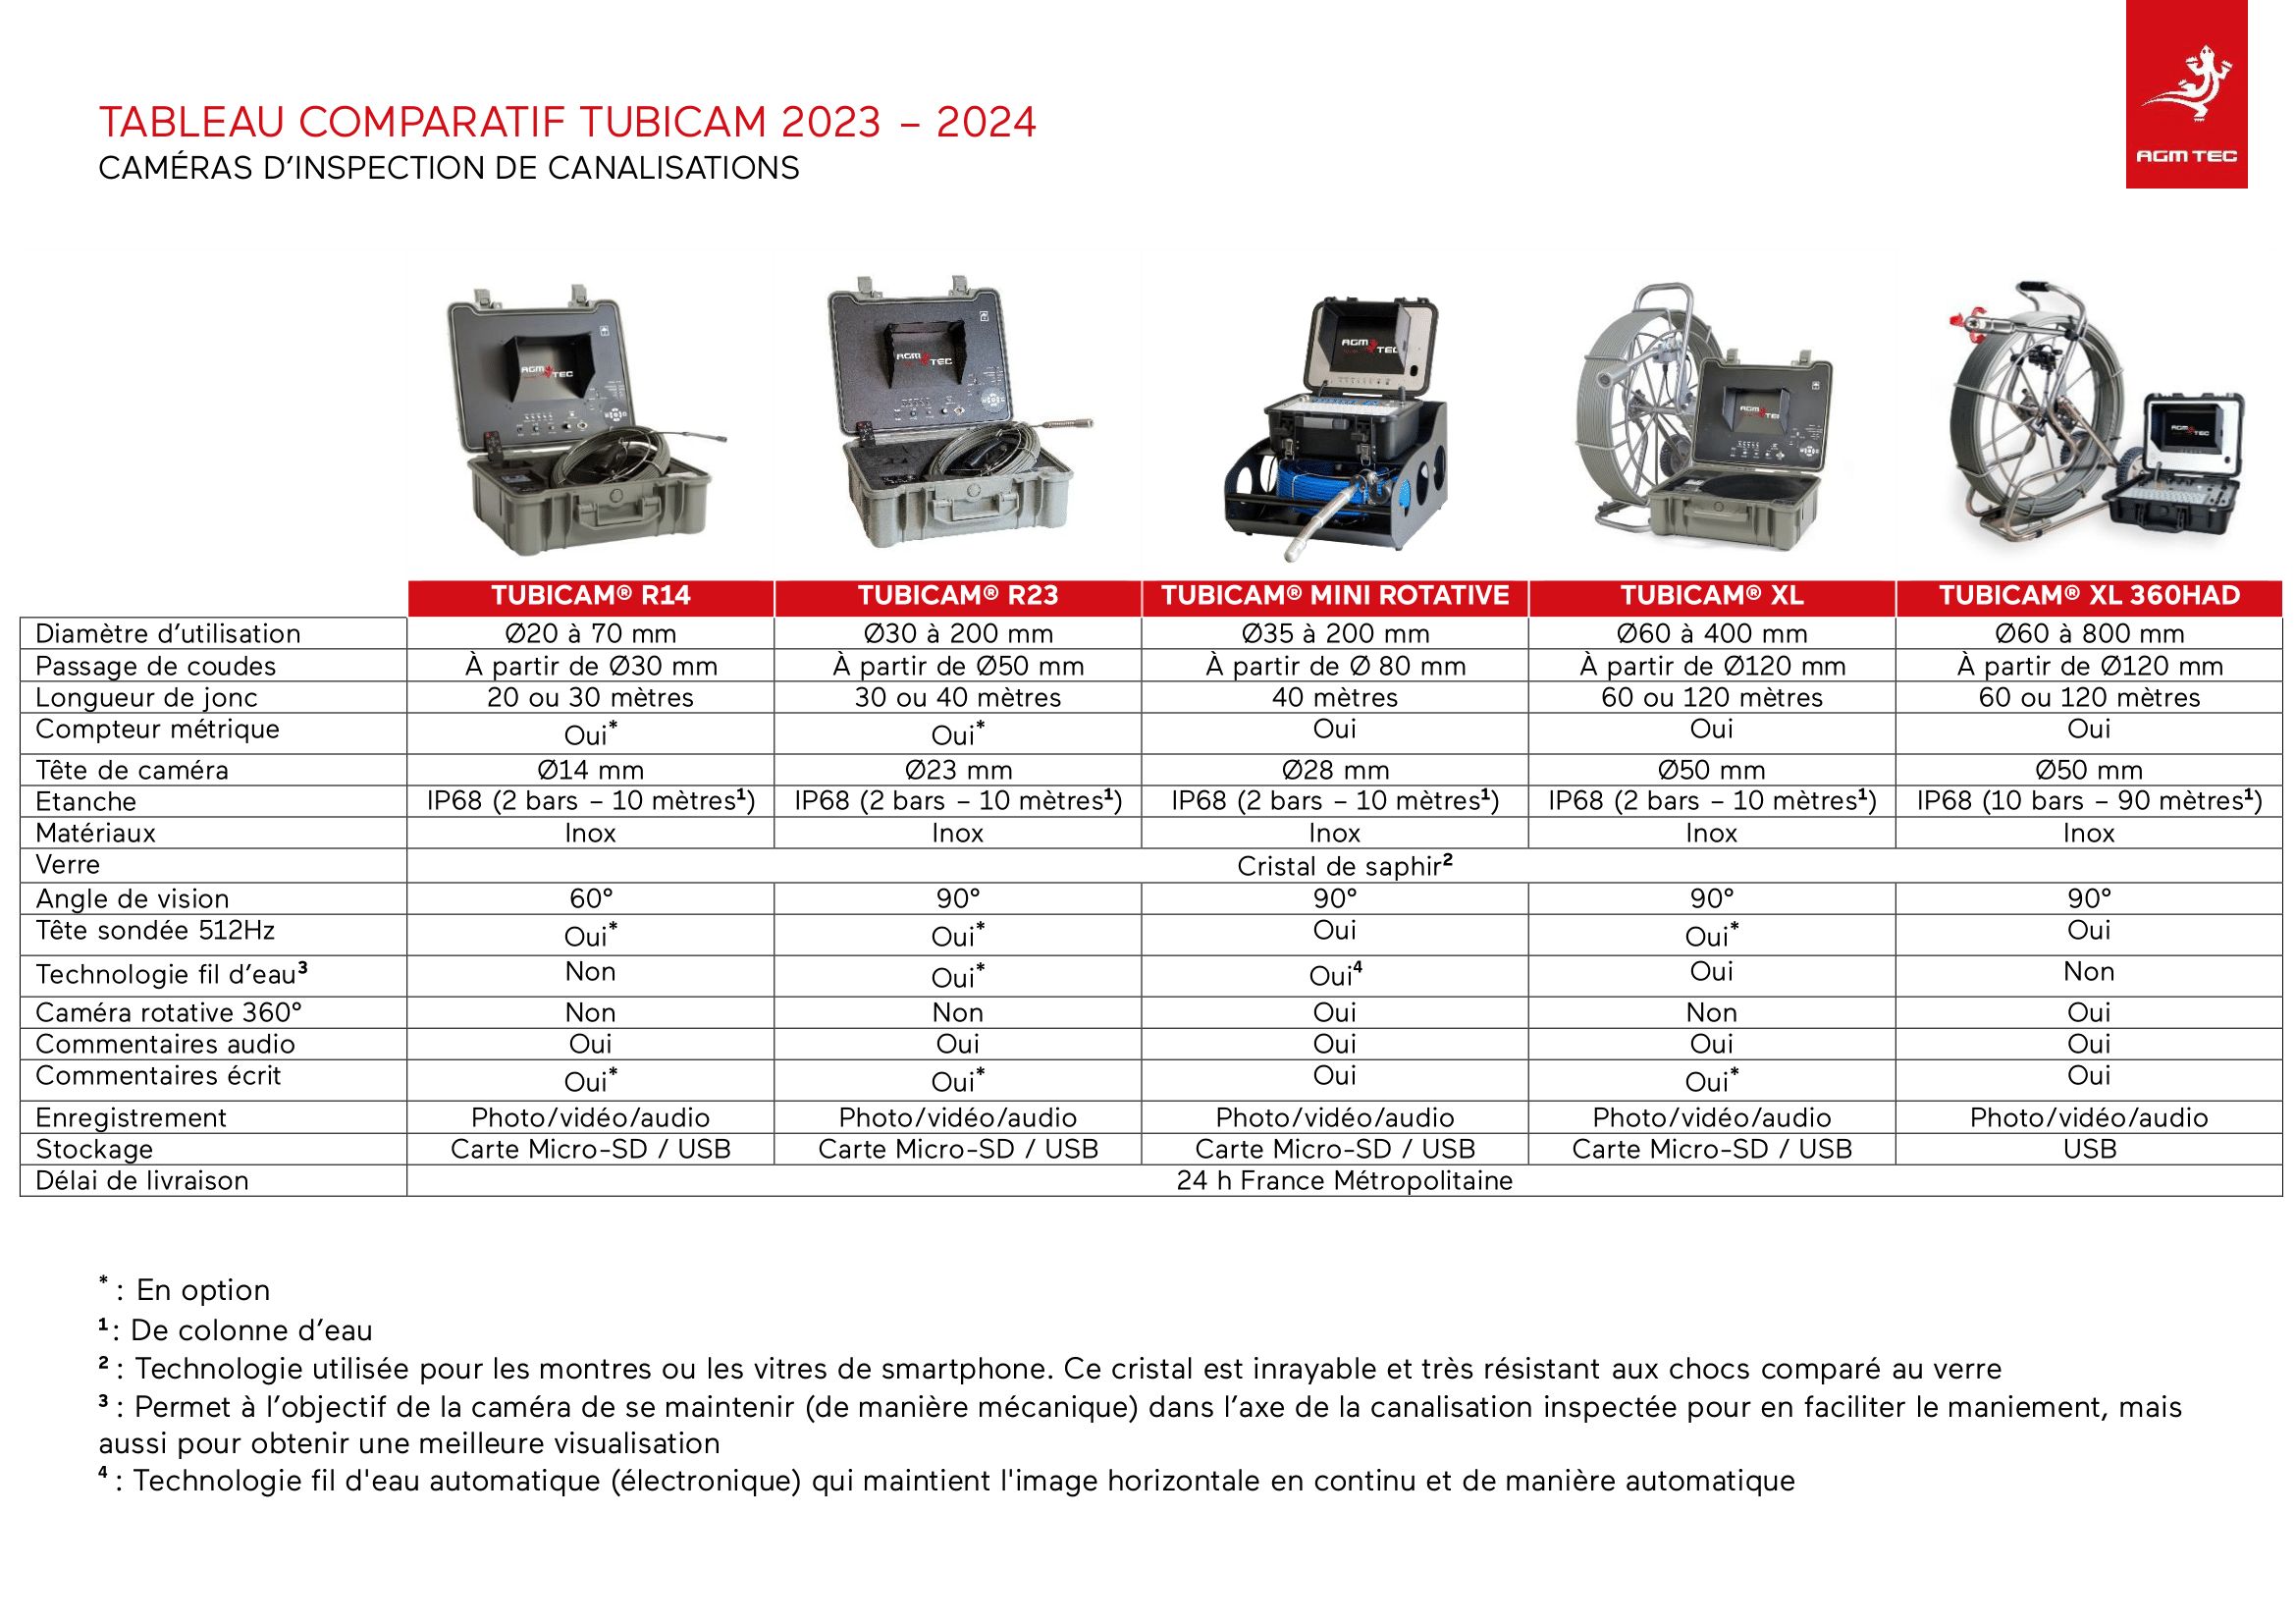 Comparateurs de caméras d'inspection de canalisations